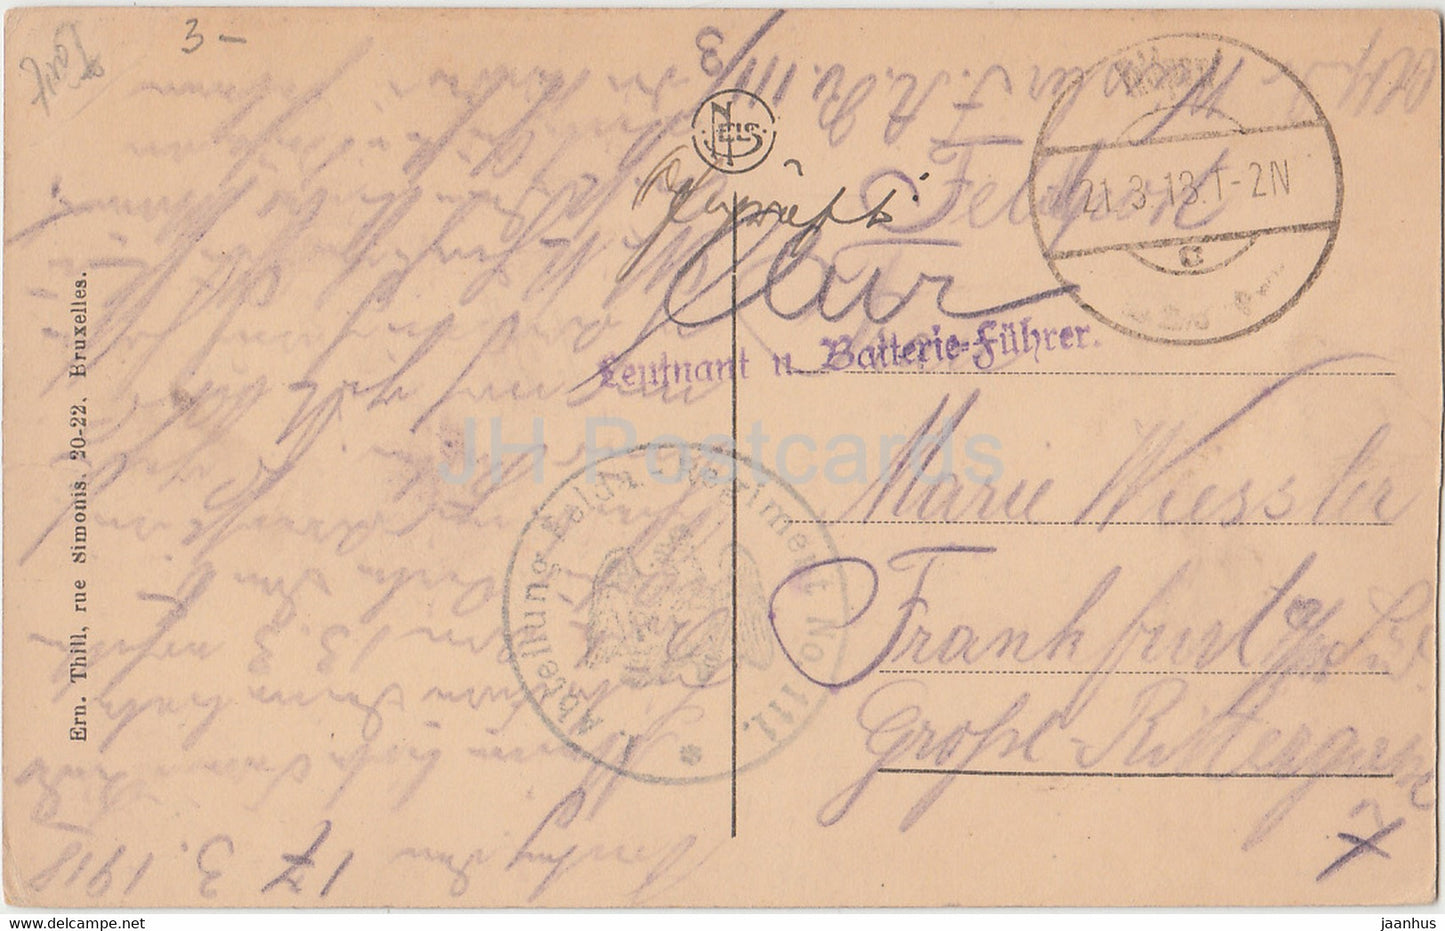 Vallee de la Semois - Mouzaive et Alle - Abteilung Felda Regiment 111 - Feldpost - old postcard - 1918 - Belgium - used